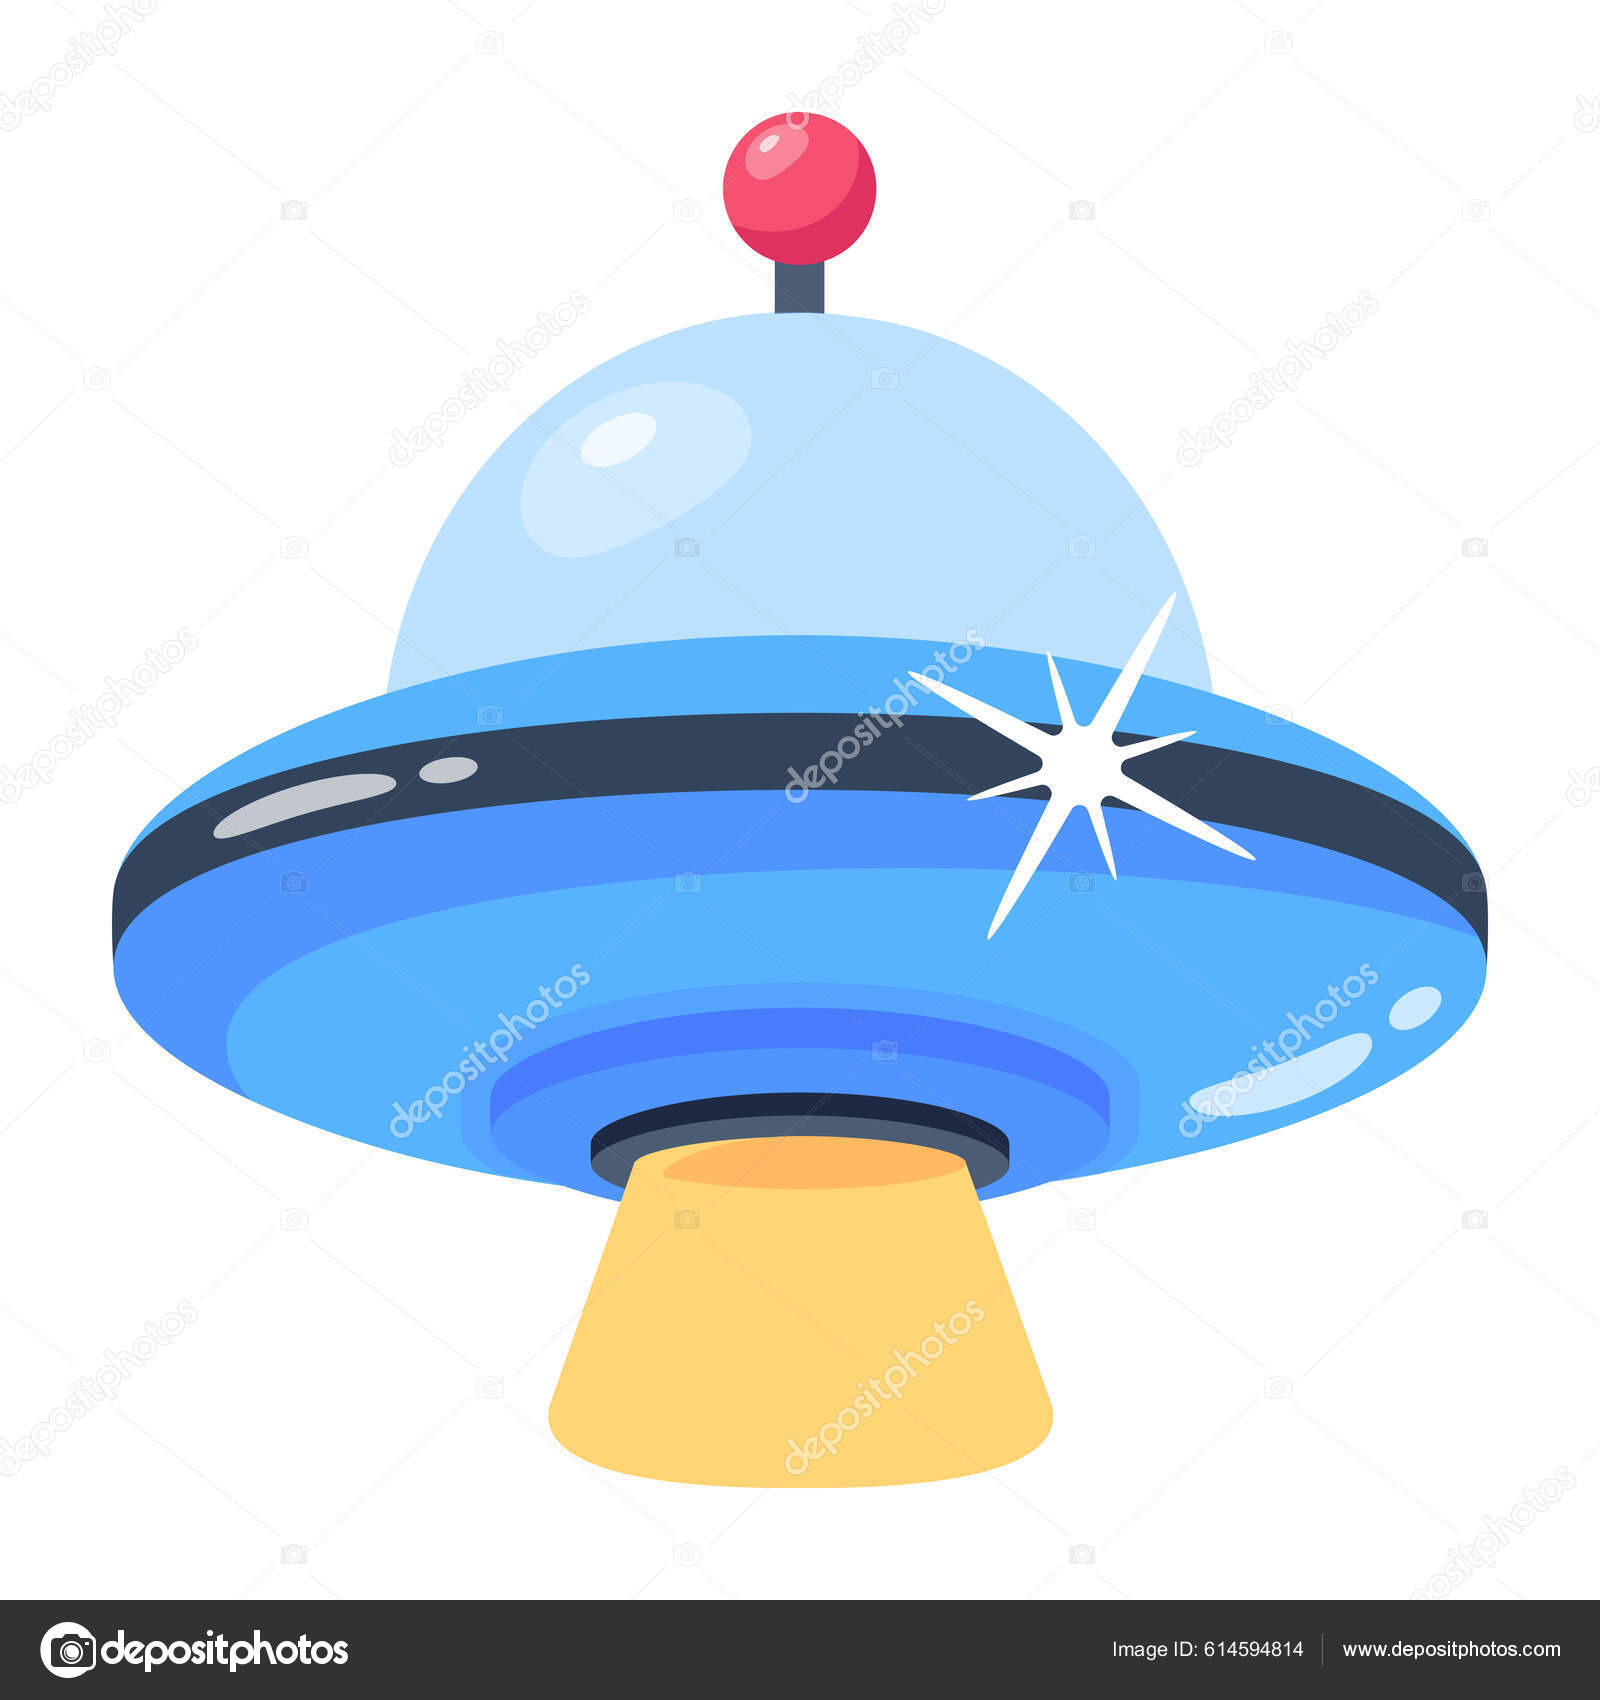 Hãy thử vẽ một chiếc UFO trong không gian bằng những đường nét mềm mại và phóng khoáng. Cùng chiêm ngưỡng hình ảnh đầy bí ẩn và huyền bí của vật thể bay không xác định này nhé.